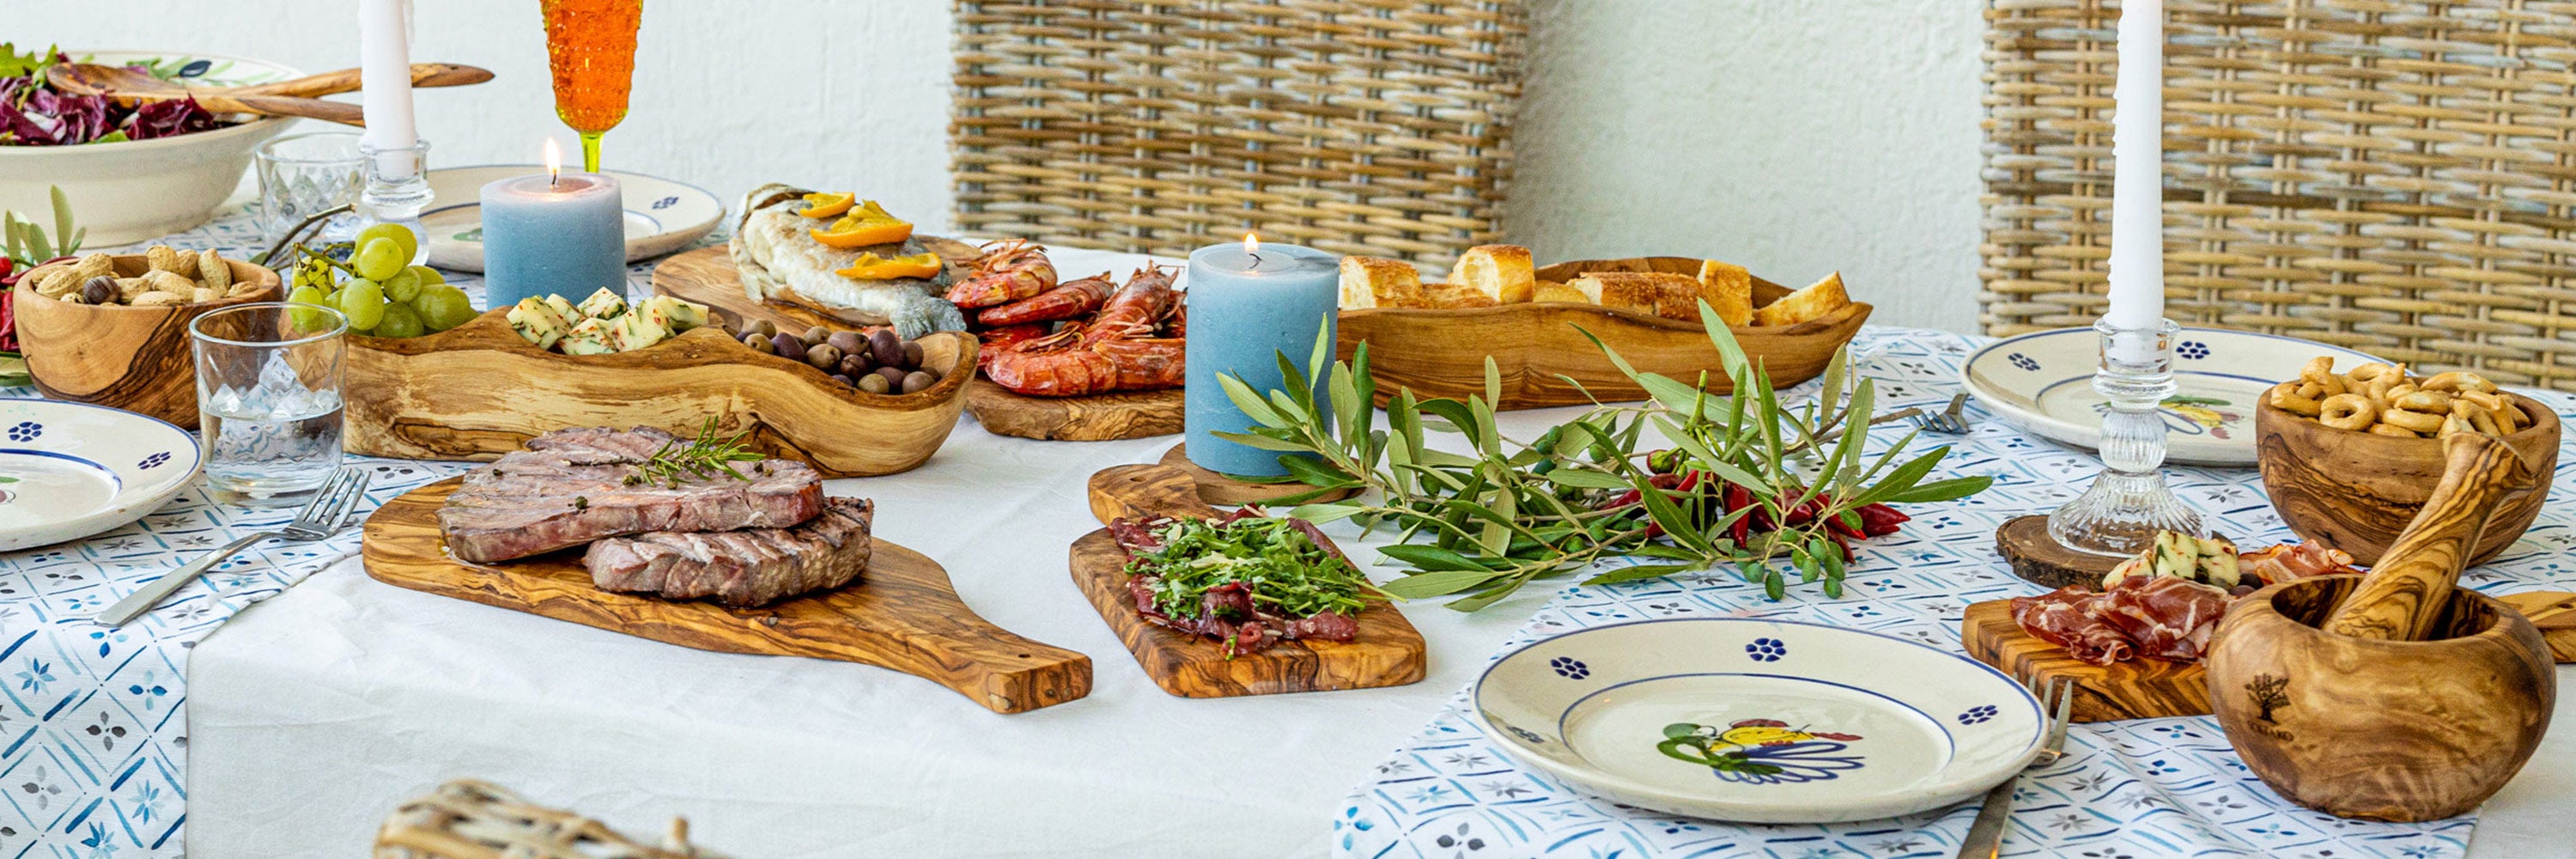 SOLTAKO Olivenholz Küchen Accessoires gedeckter Tisch